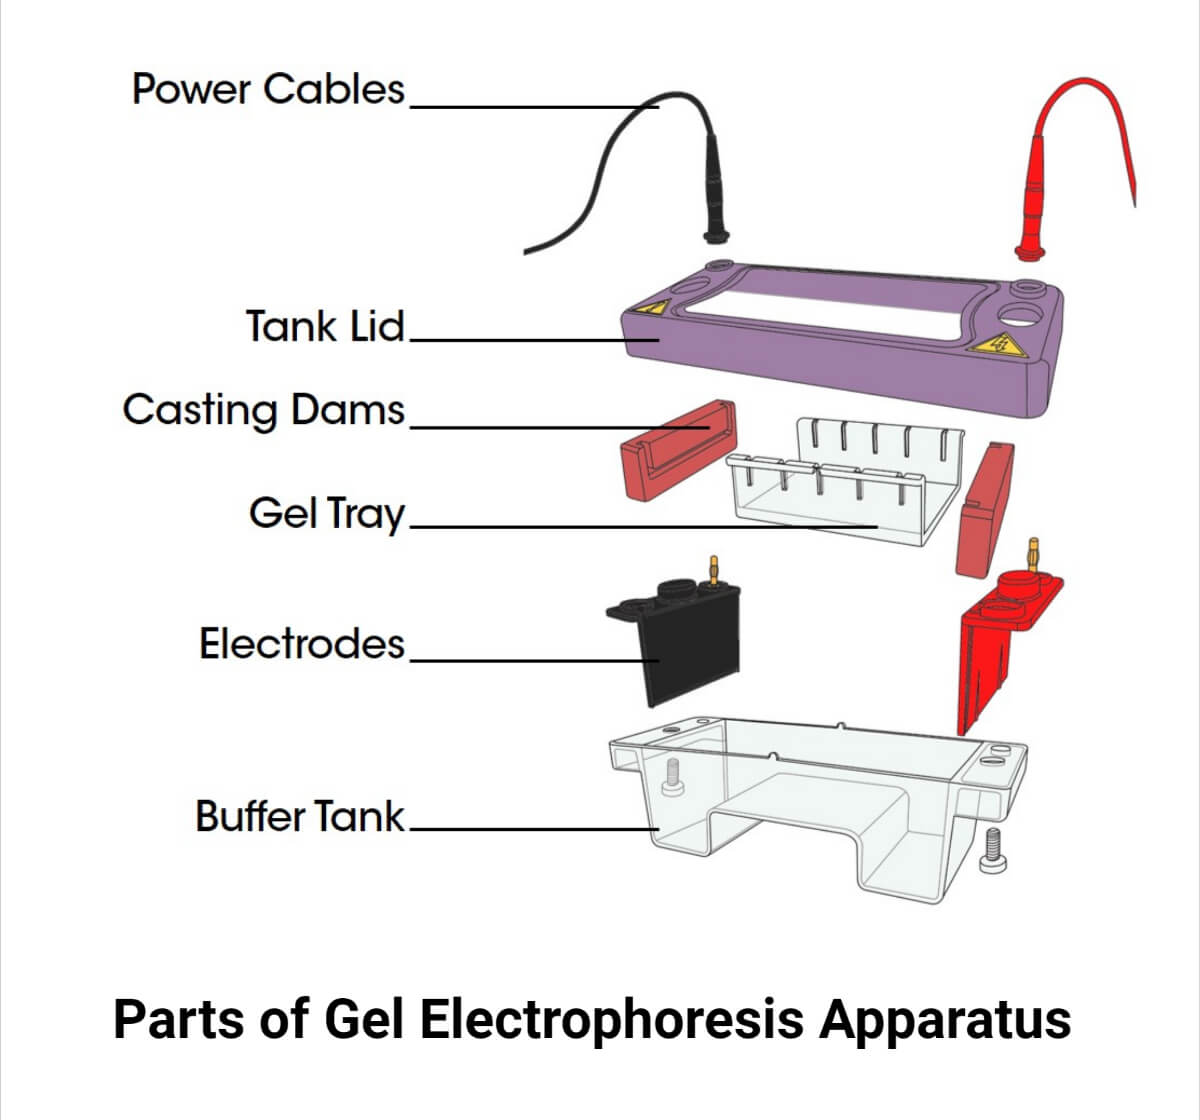 Parts of Gel Electrophoresis Apparatus